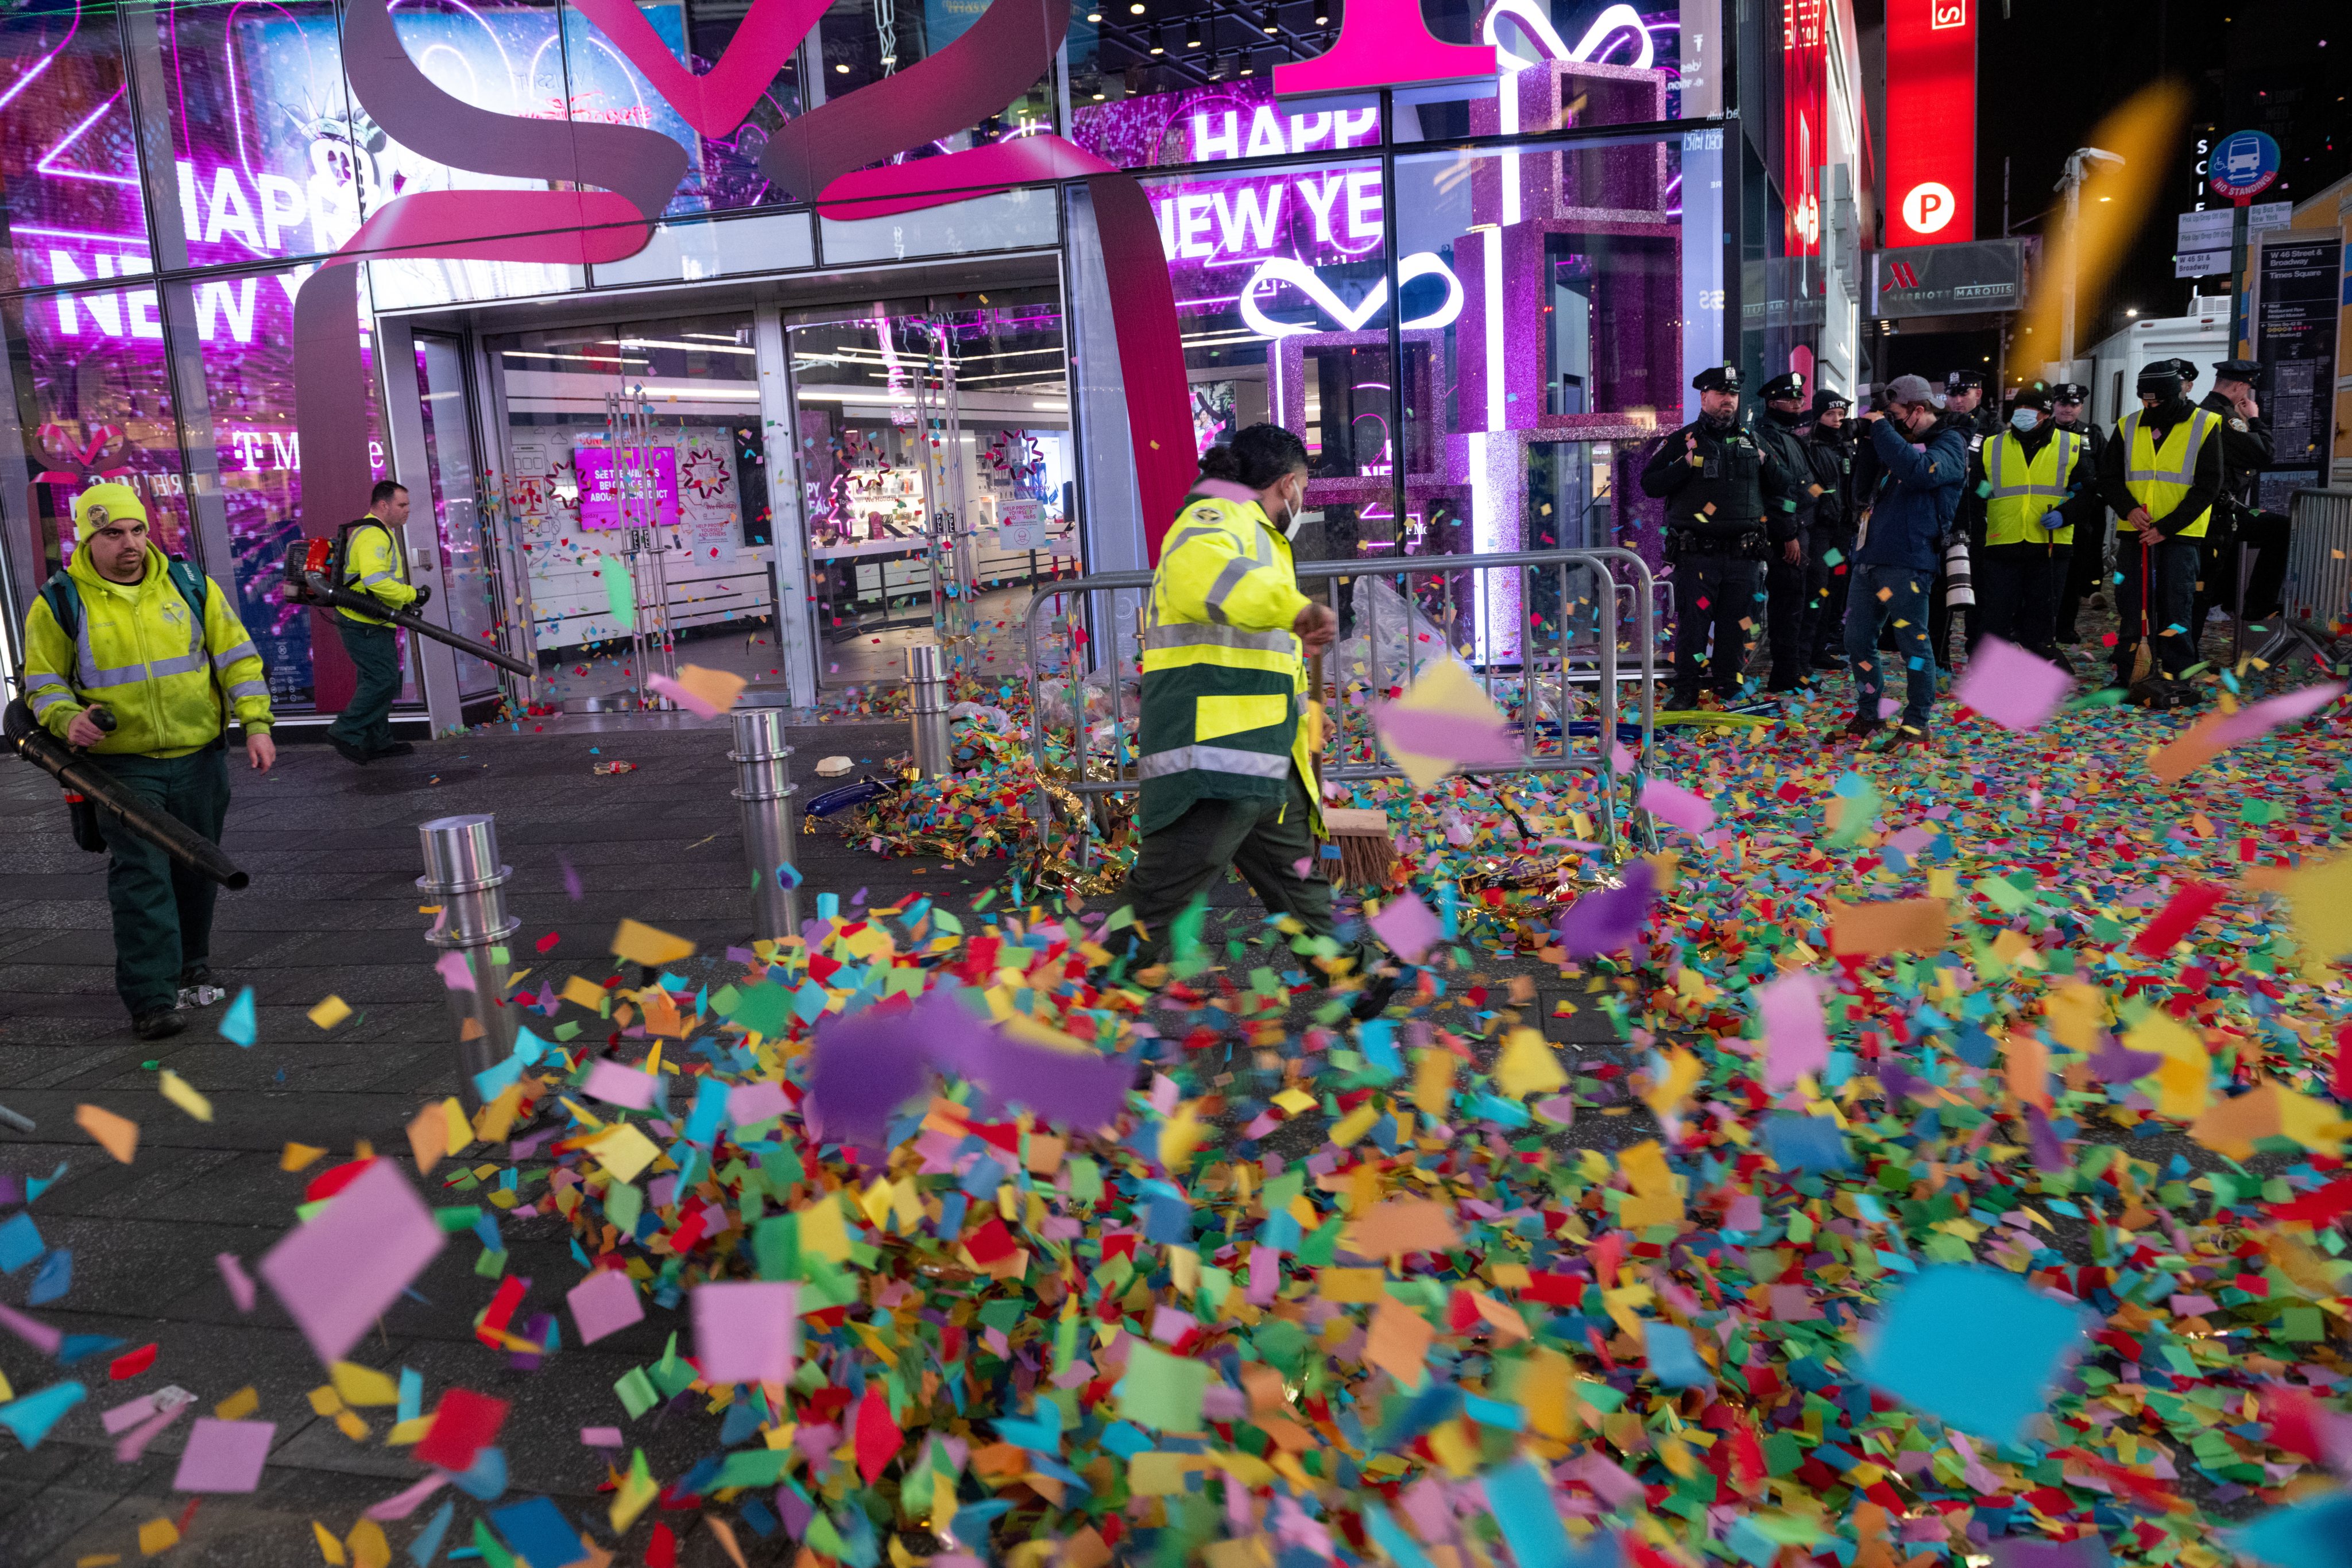 Limpeza da Praça de Times Square em Nova Iorque no dia 1 de janeiro, depois da Passagem de Ano